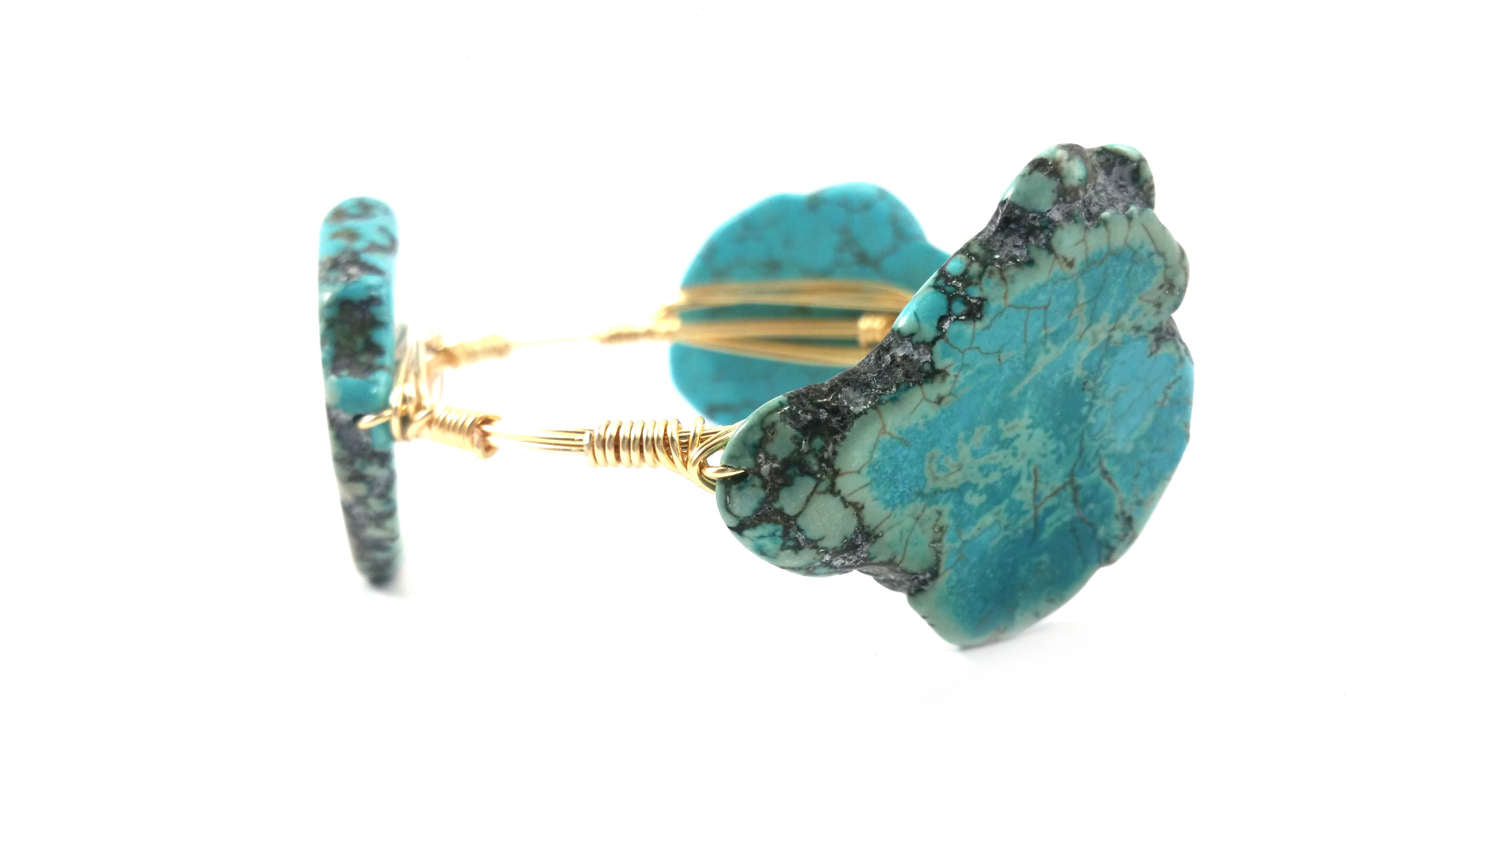 Abalone shell bangle, turquoise bangle, labradorite bangle set of 3 bracelets